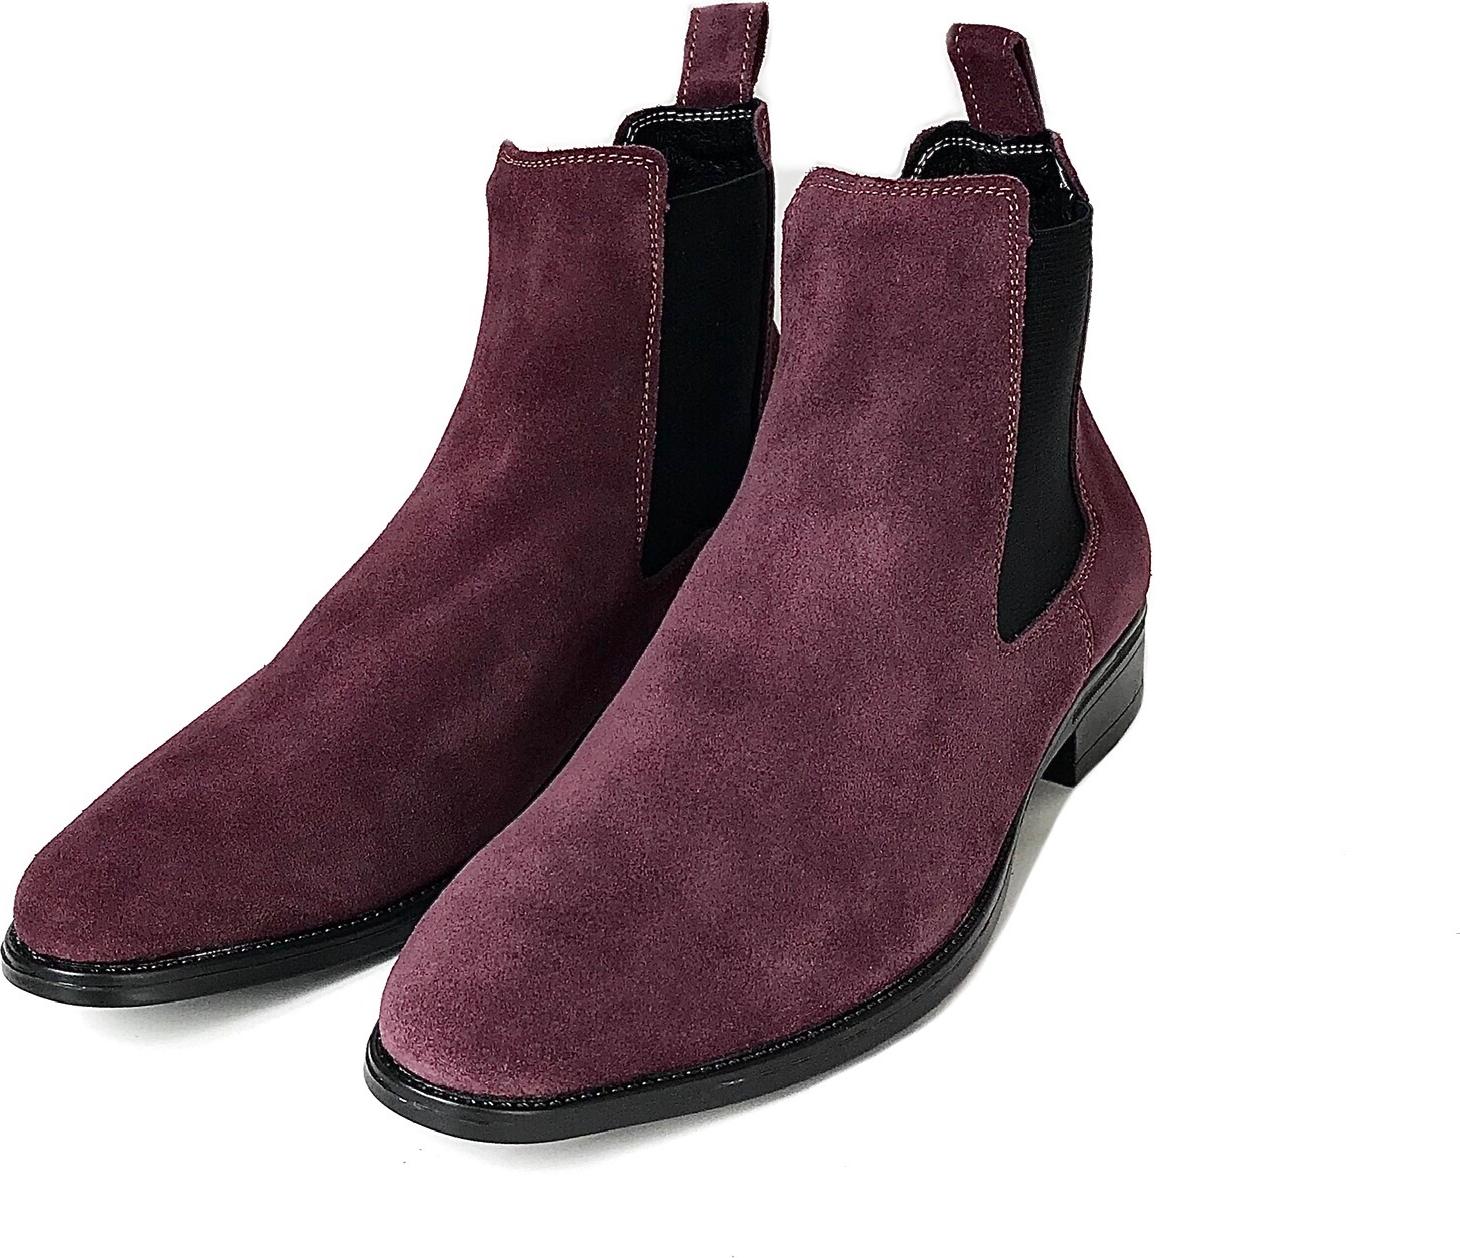 Giày Chelsea Boots Cổ Cao Da Bò Thật Nguyên Tấm Cao Cấp Tefoss HT350 Thời Trang 4 Màu Hot Trend Nhất Size 37 - 43